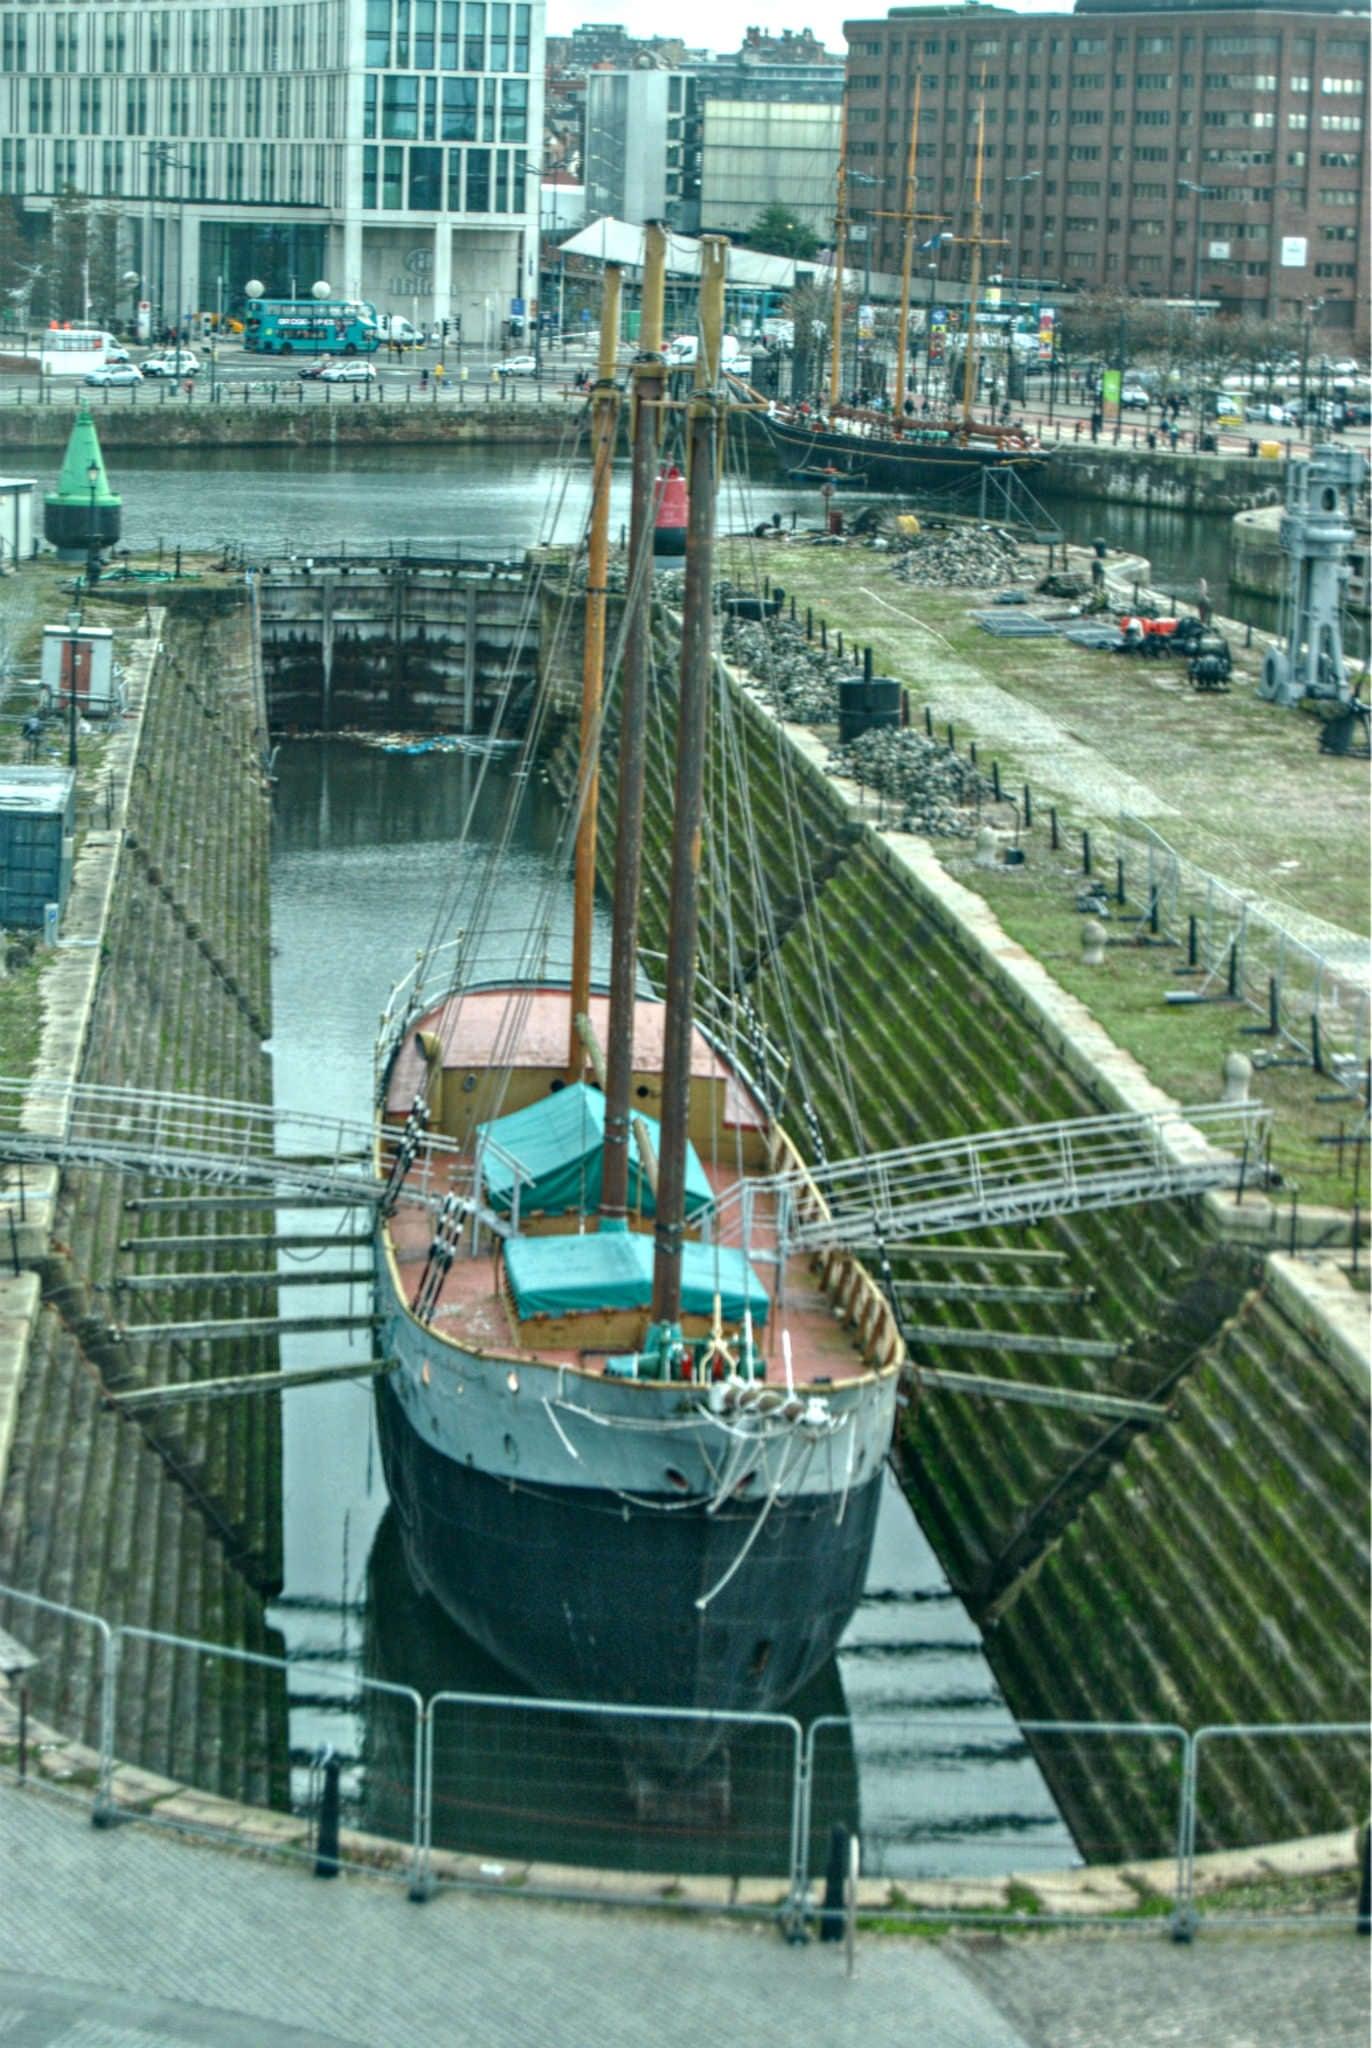 De Wadden görüntü. liverpool boat drydock schooner albertdock merseyside dewadden